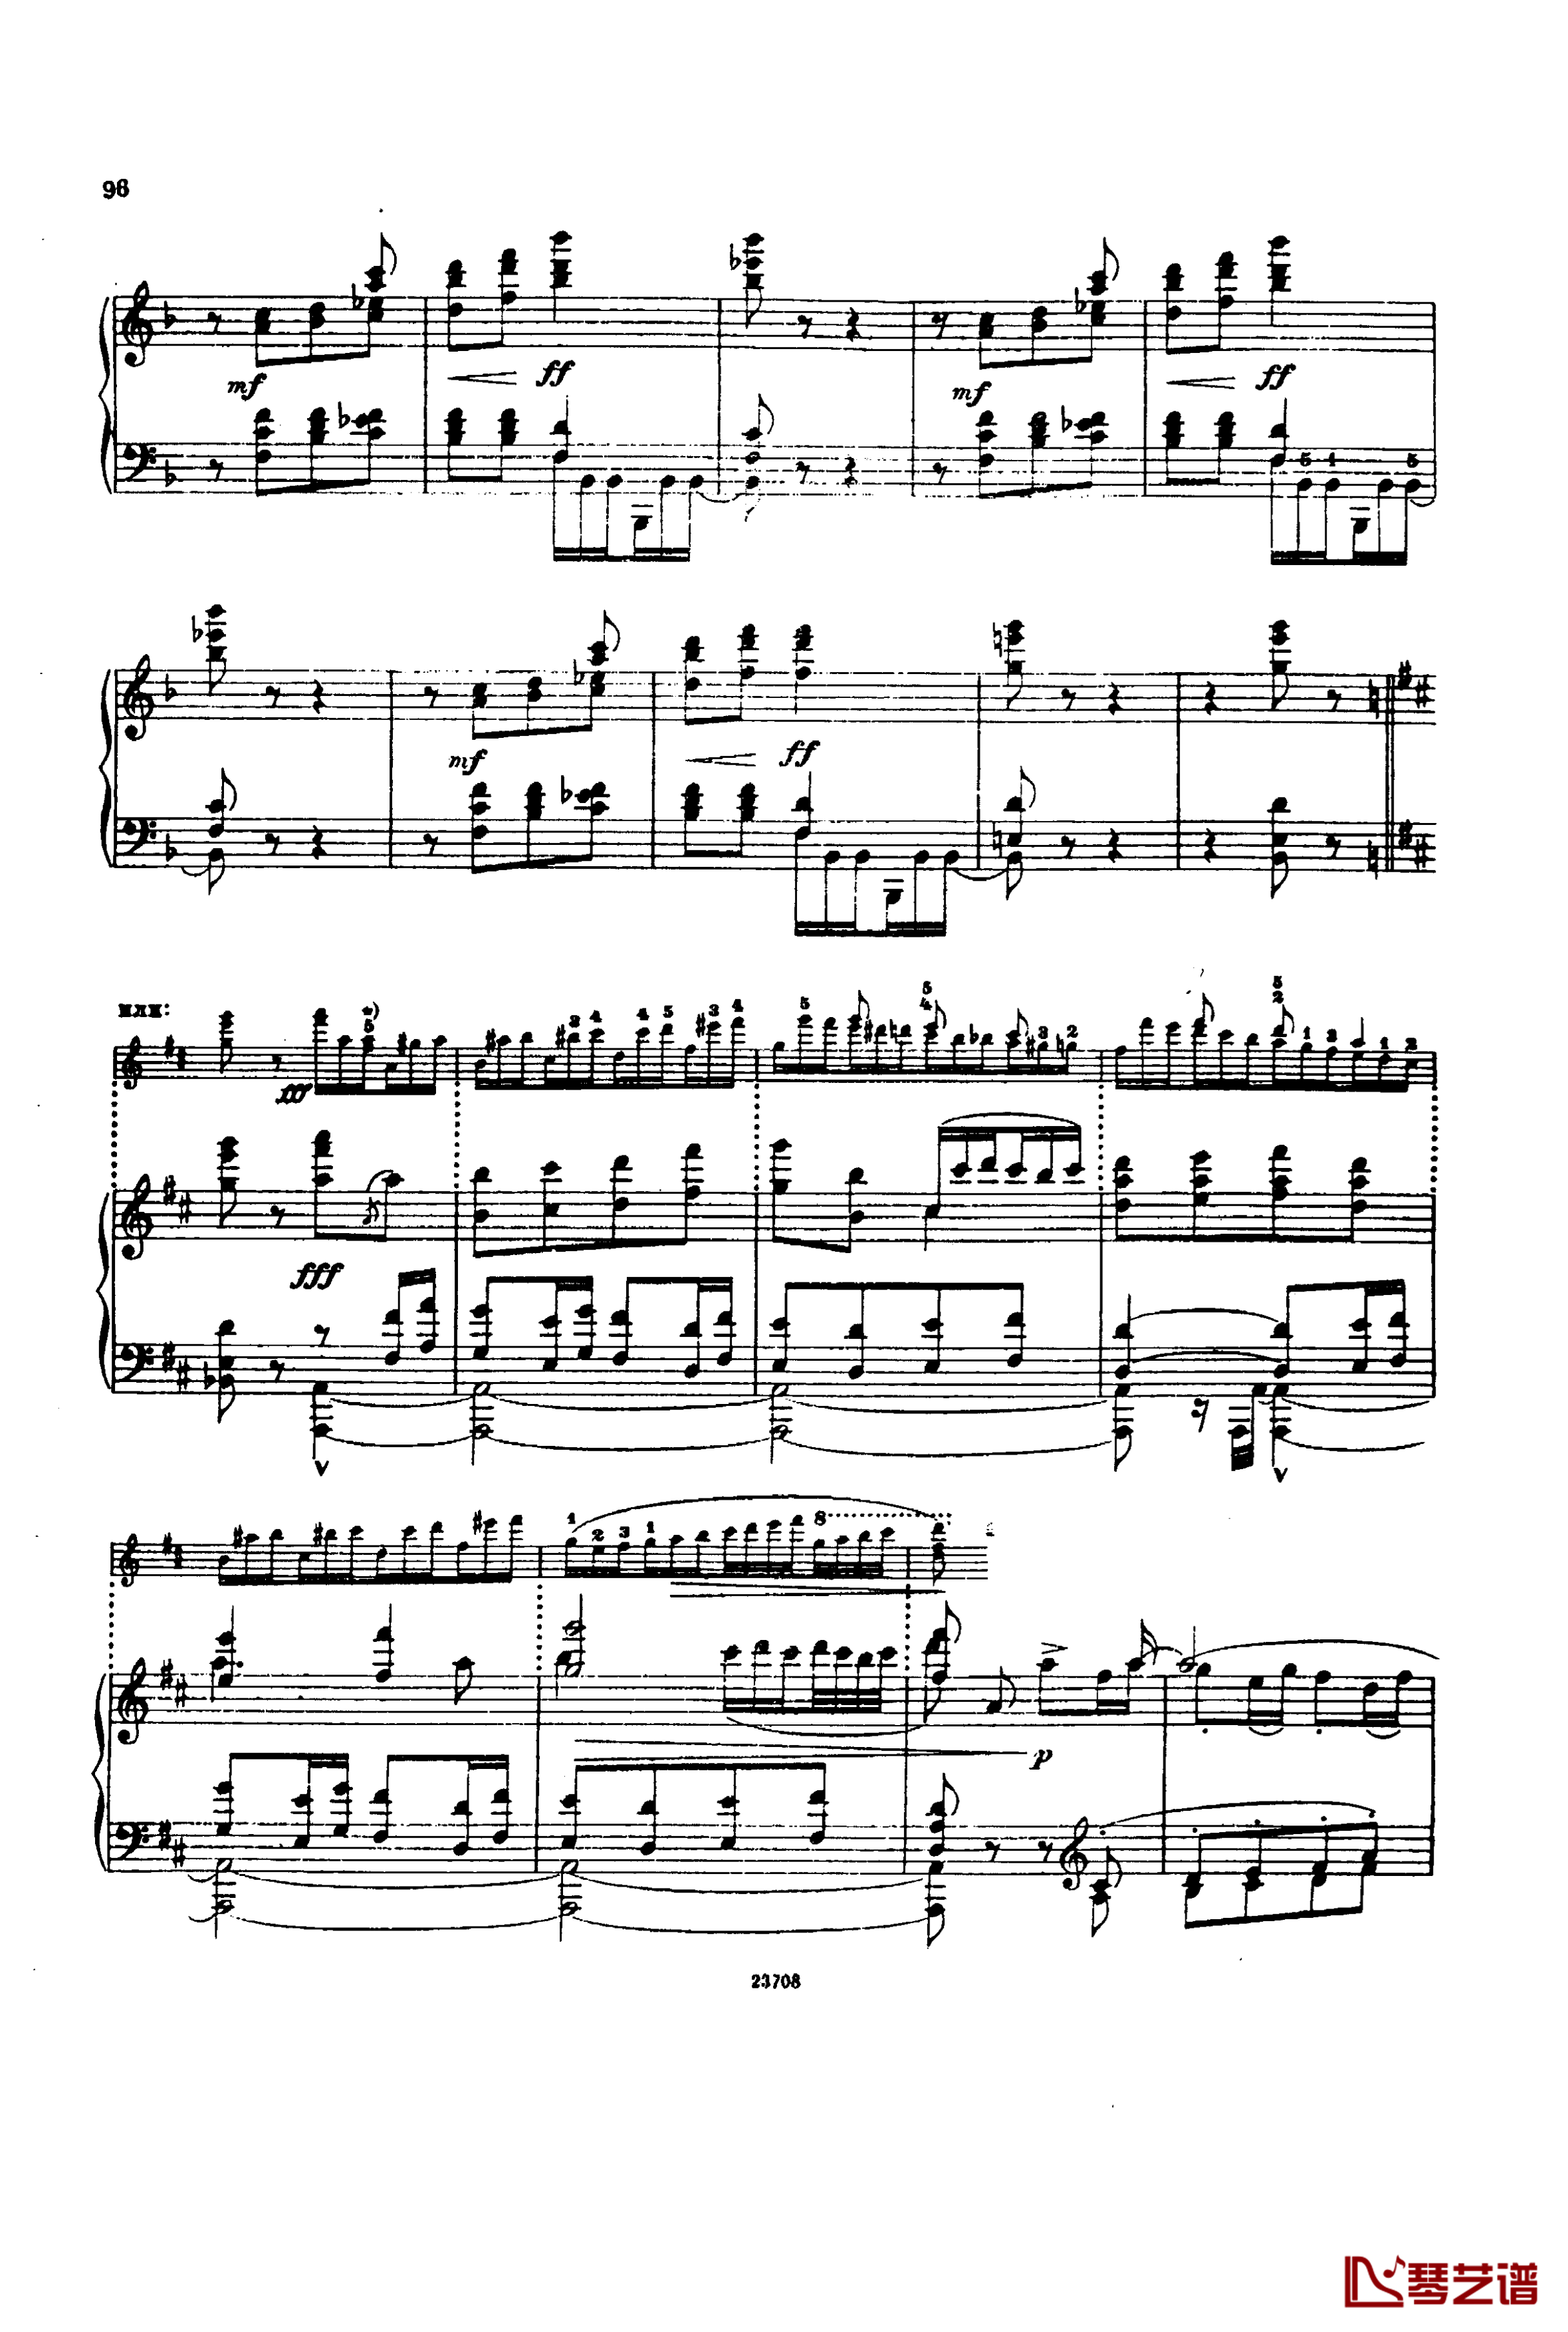 卡玛林斯卡亚幻想曲钢琴谱-格林卡10